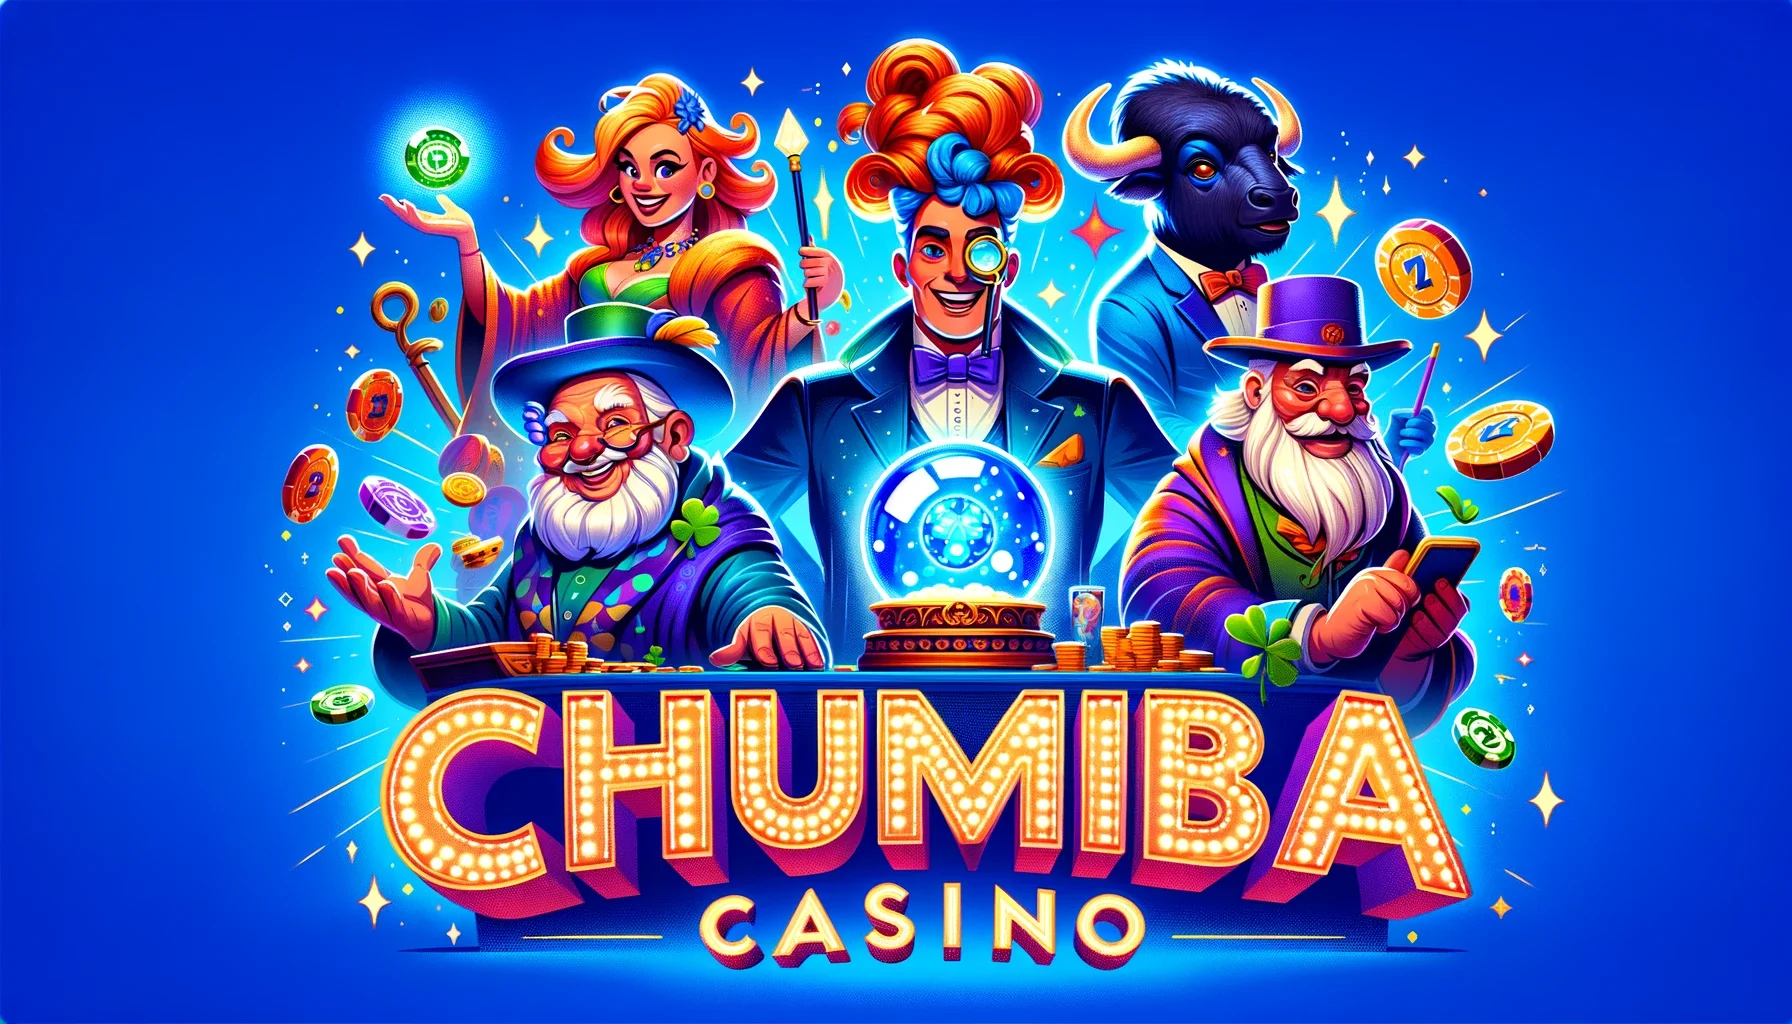 chumba casino